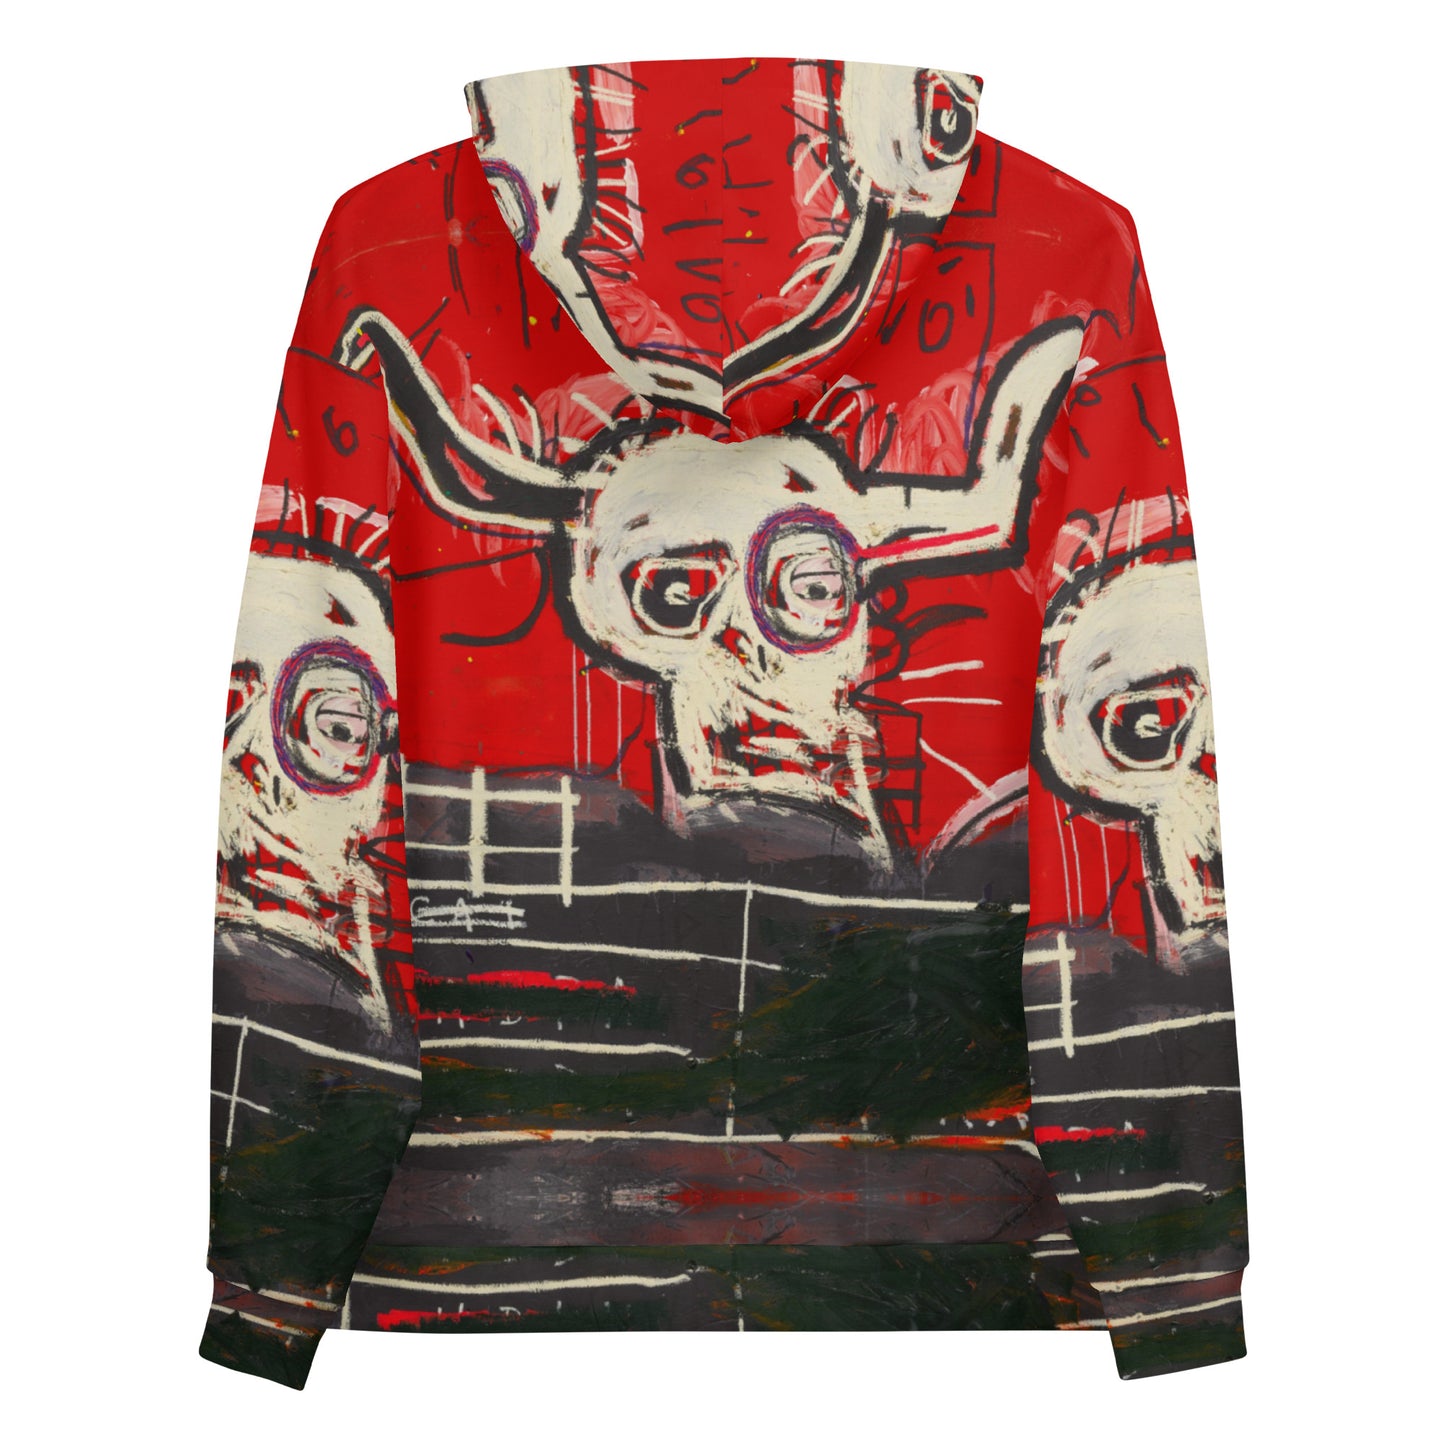 Jean-Michel Basquiat "Cabra" Artwork Printed Premium Streetwear Sweatshirt Hoodie Harajuku Graffiti